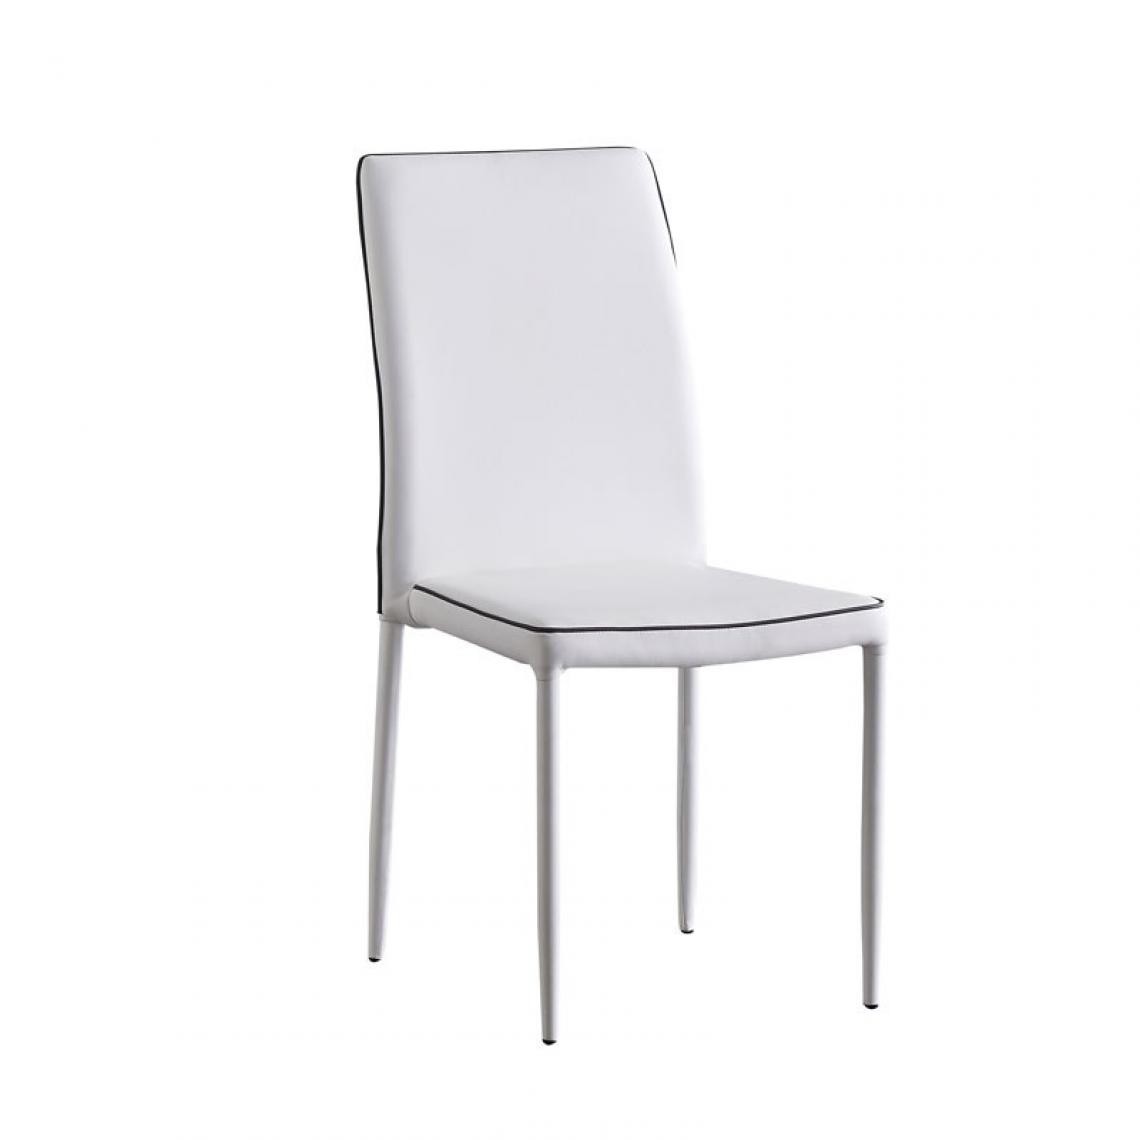 Webmarketpoint - Chaise Penelope en éco-cuir blanc 45x40cx93h cm - Chaises